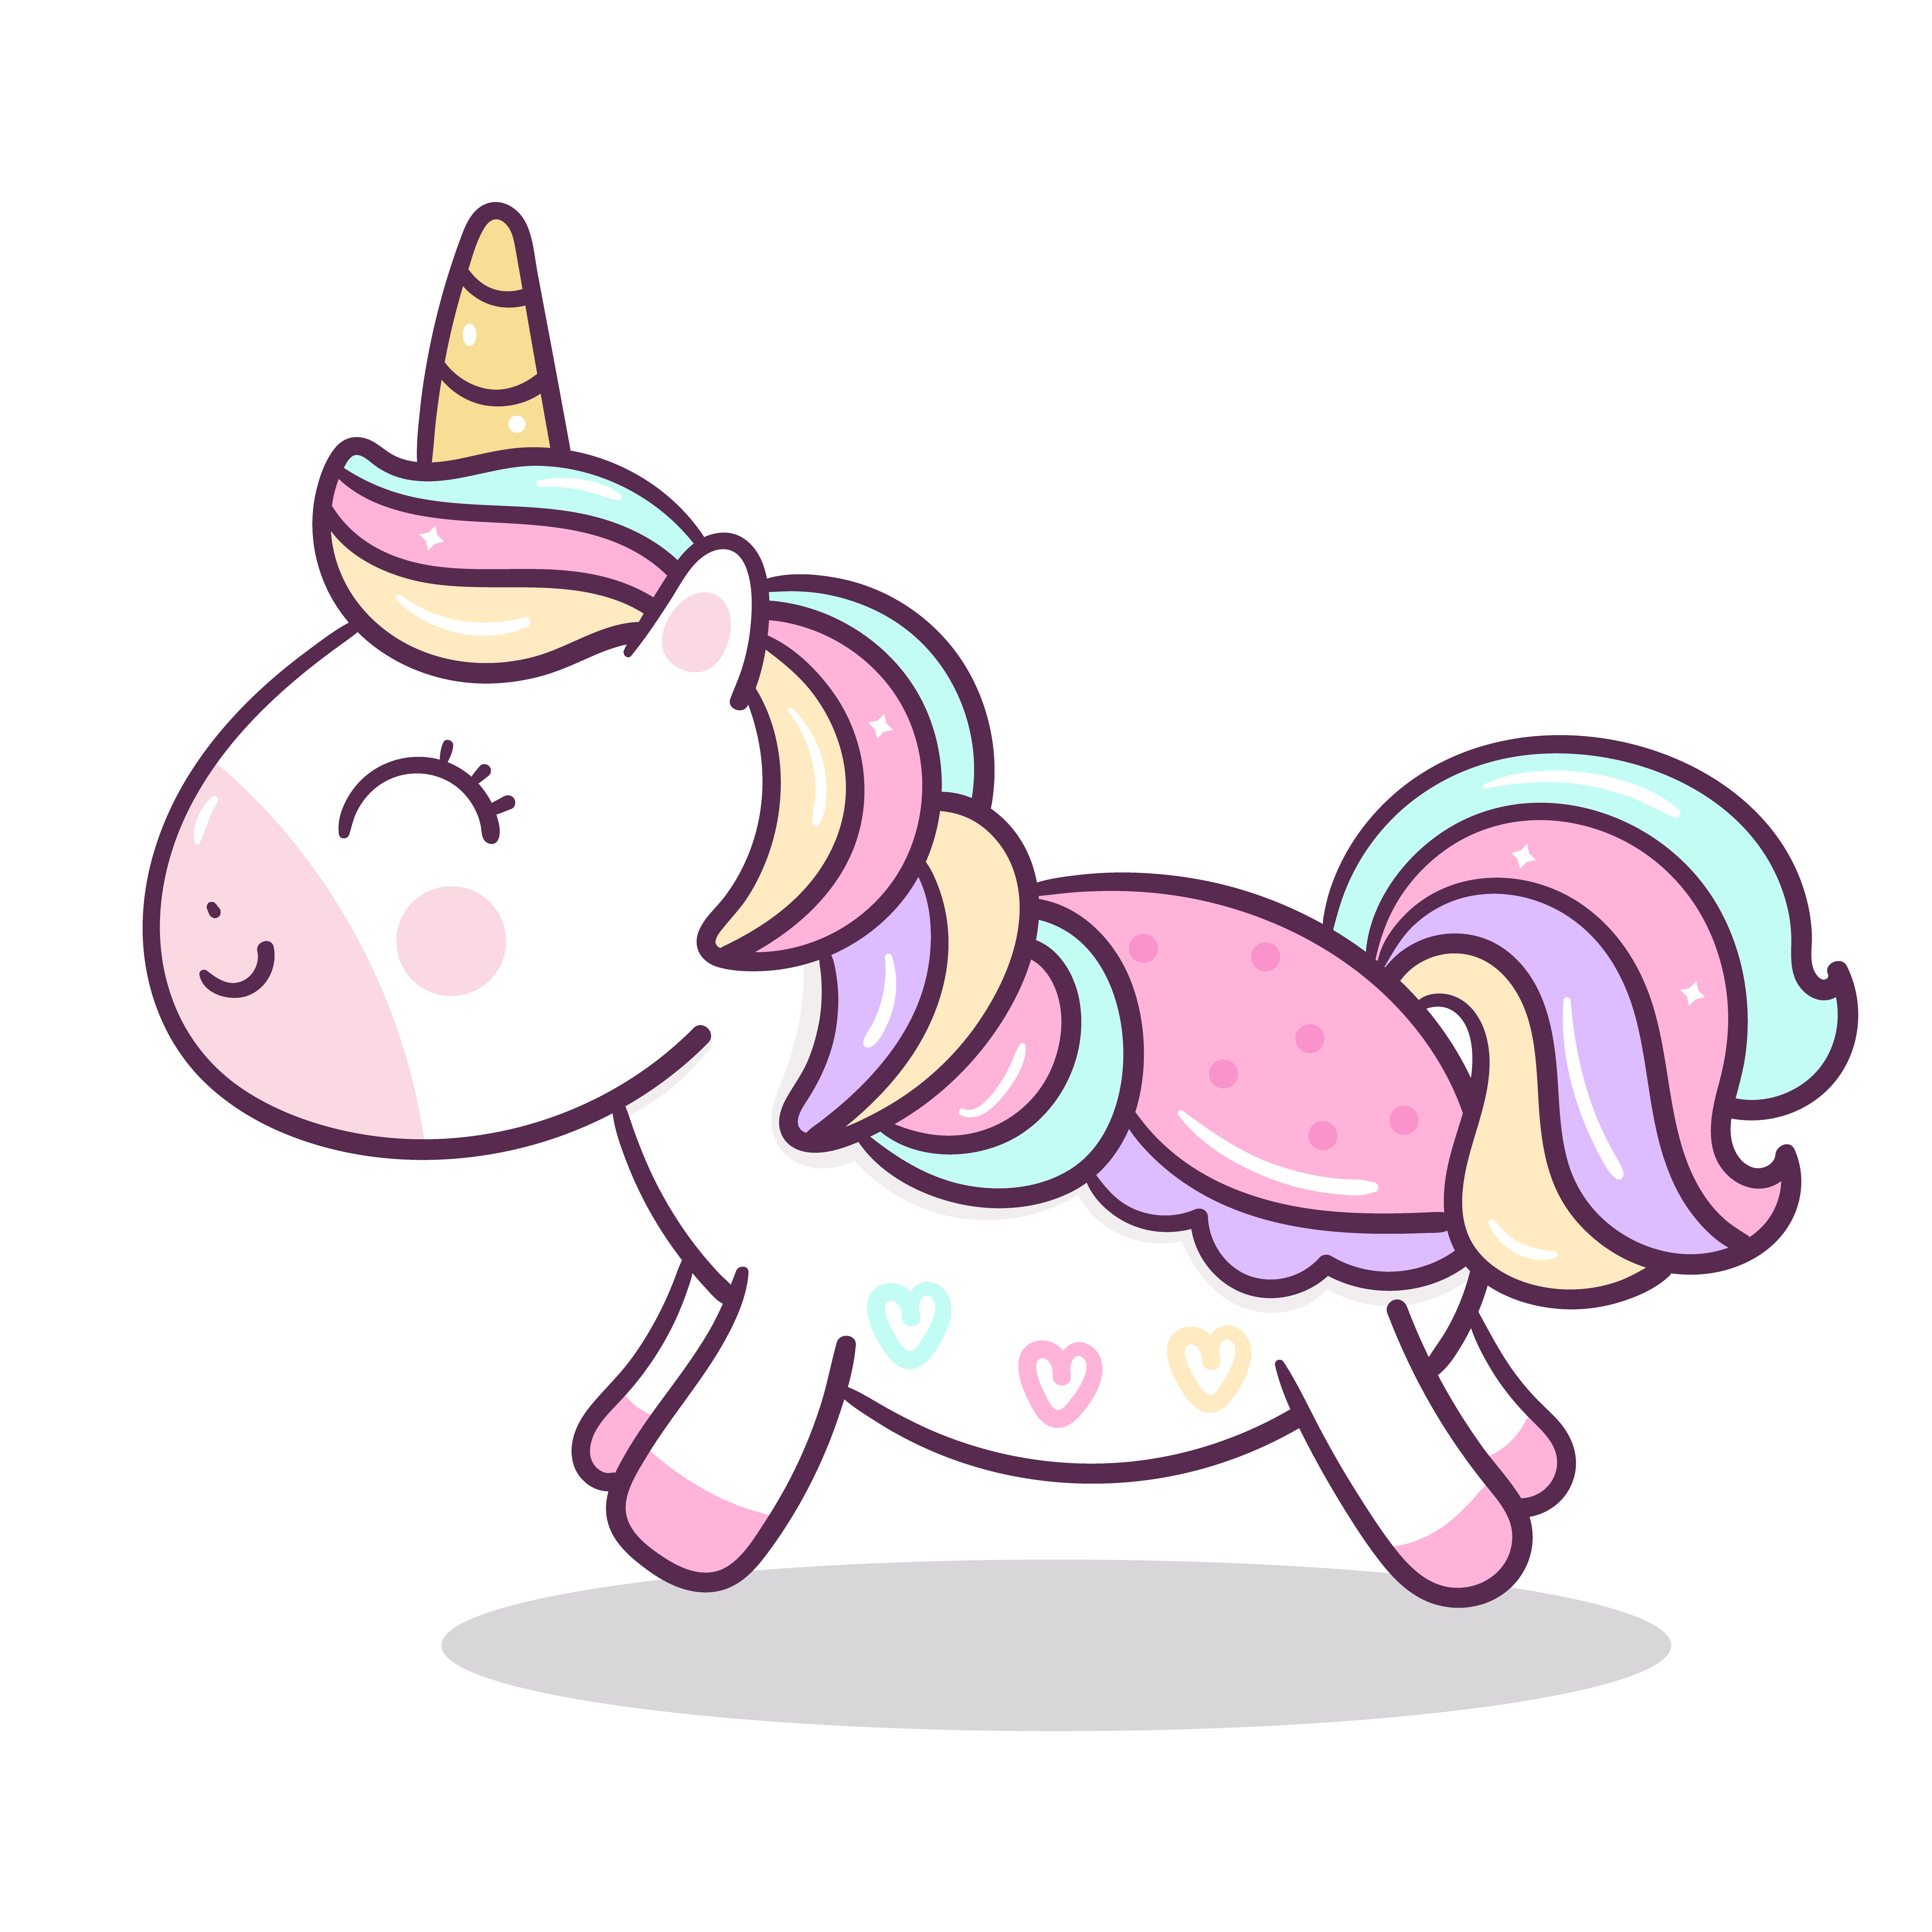 Cute Unicorn vector - Download Free Vectors, Clipart ...